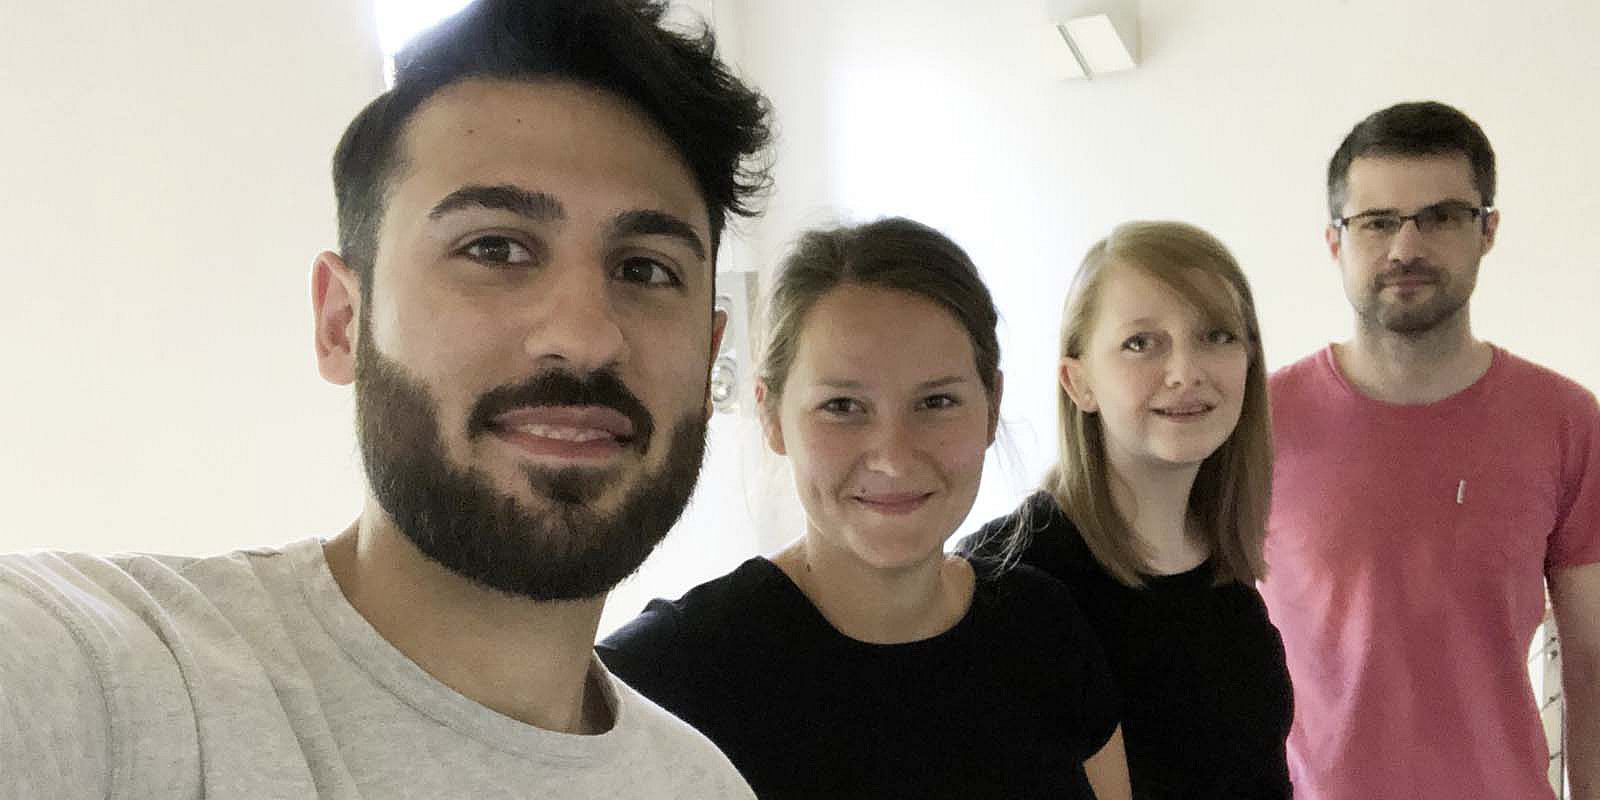 Unsere Vier Neuzugänge im Selfie-Fieber.